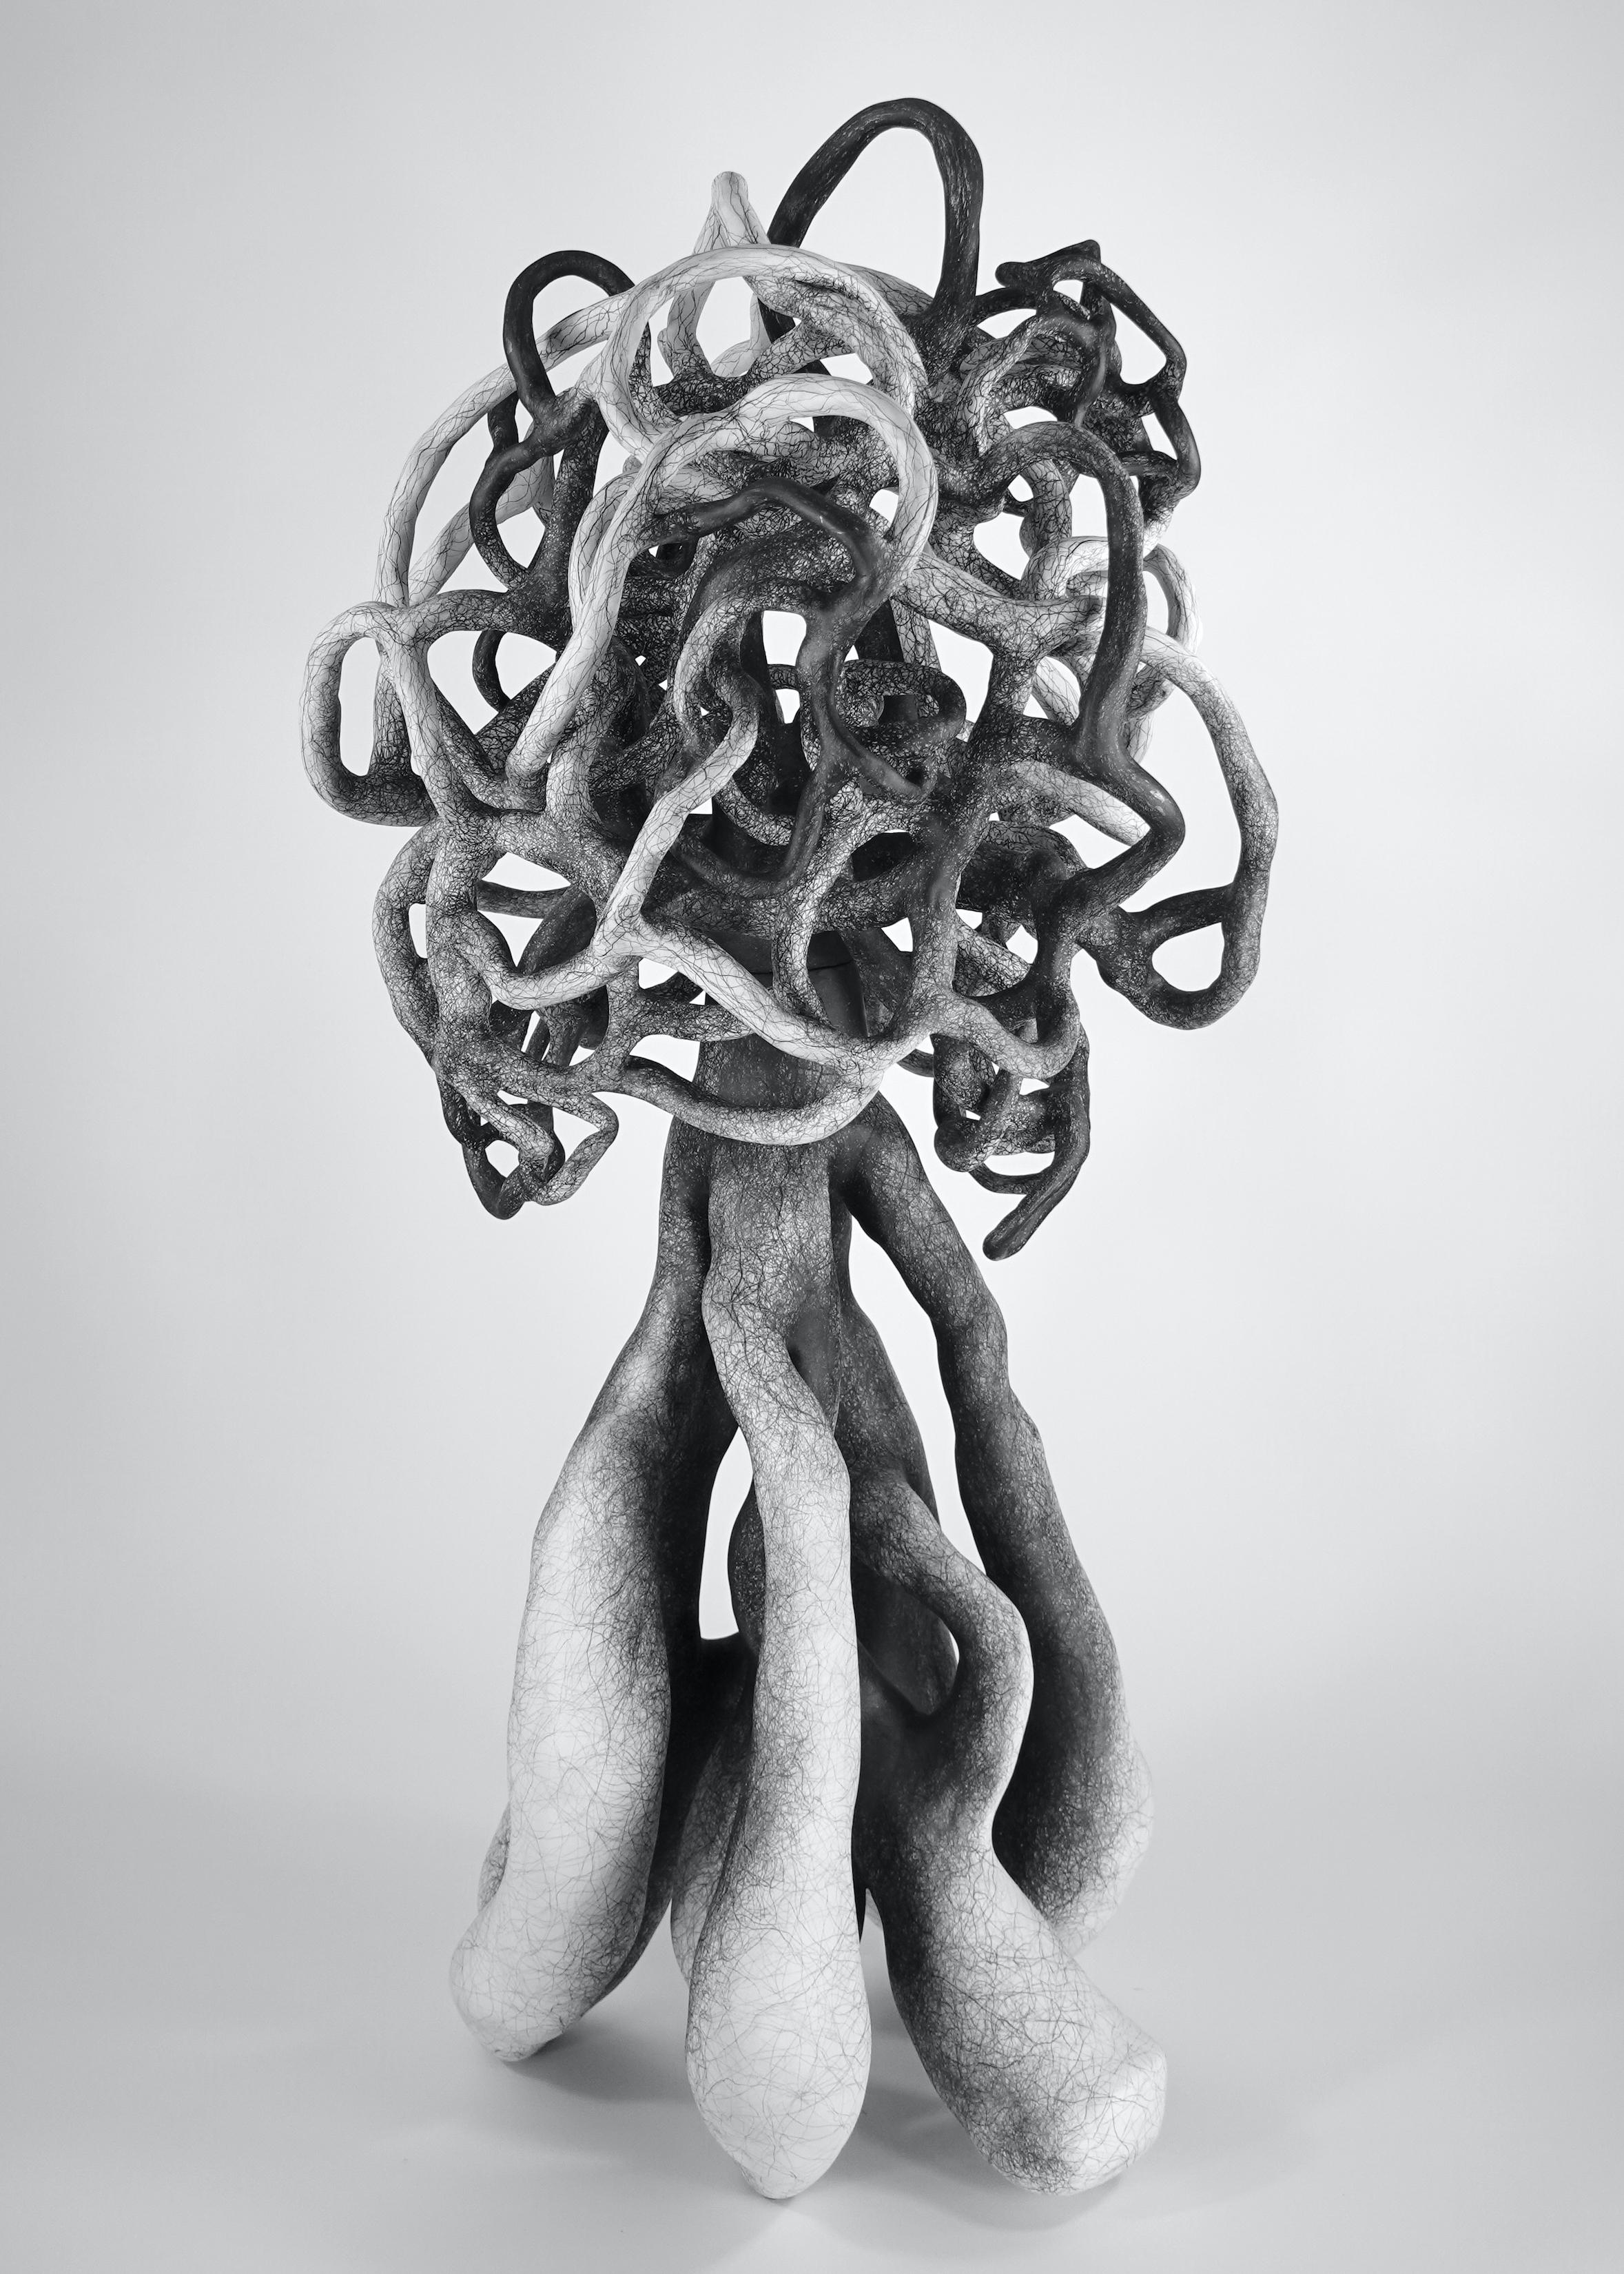 Judi Tavill Abstract Sculpture – Abstrakte minimalistische Tonskulptur: „Escalate“